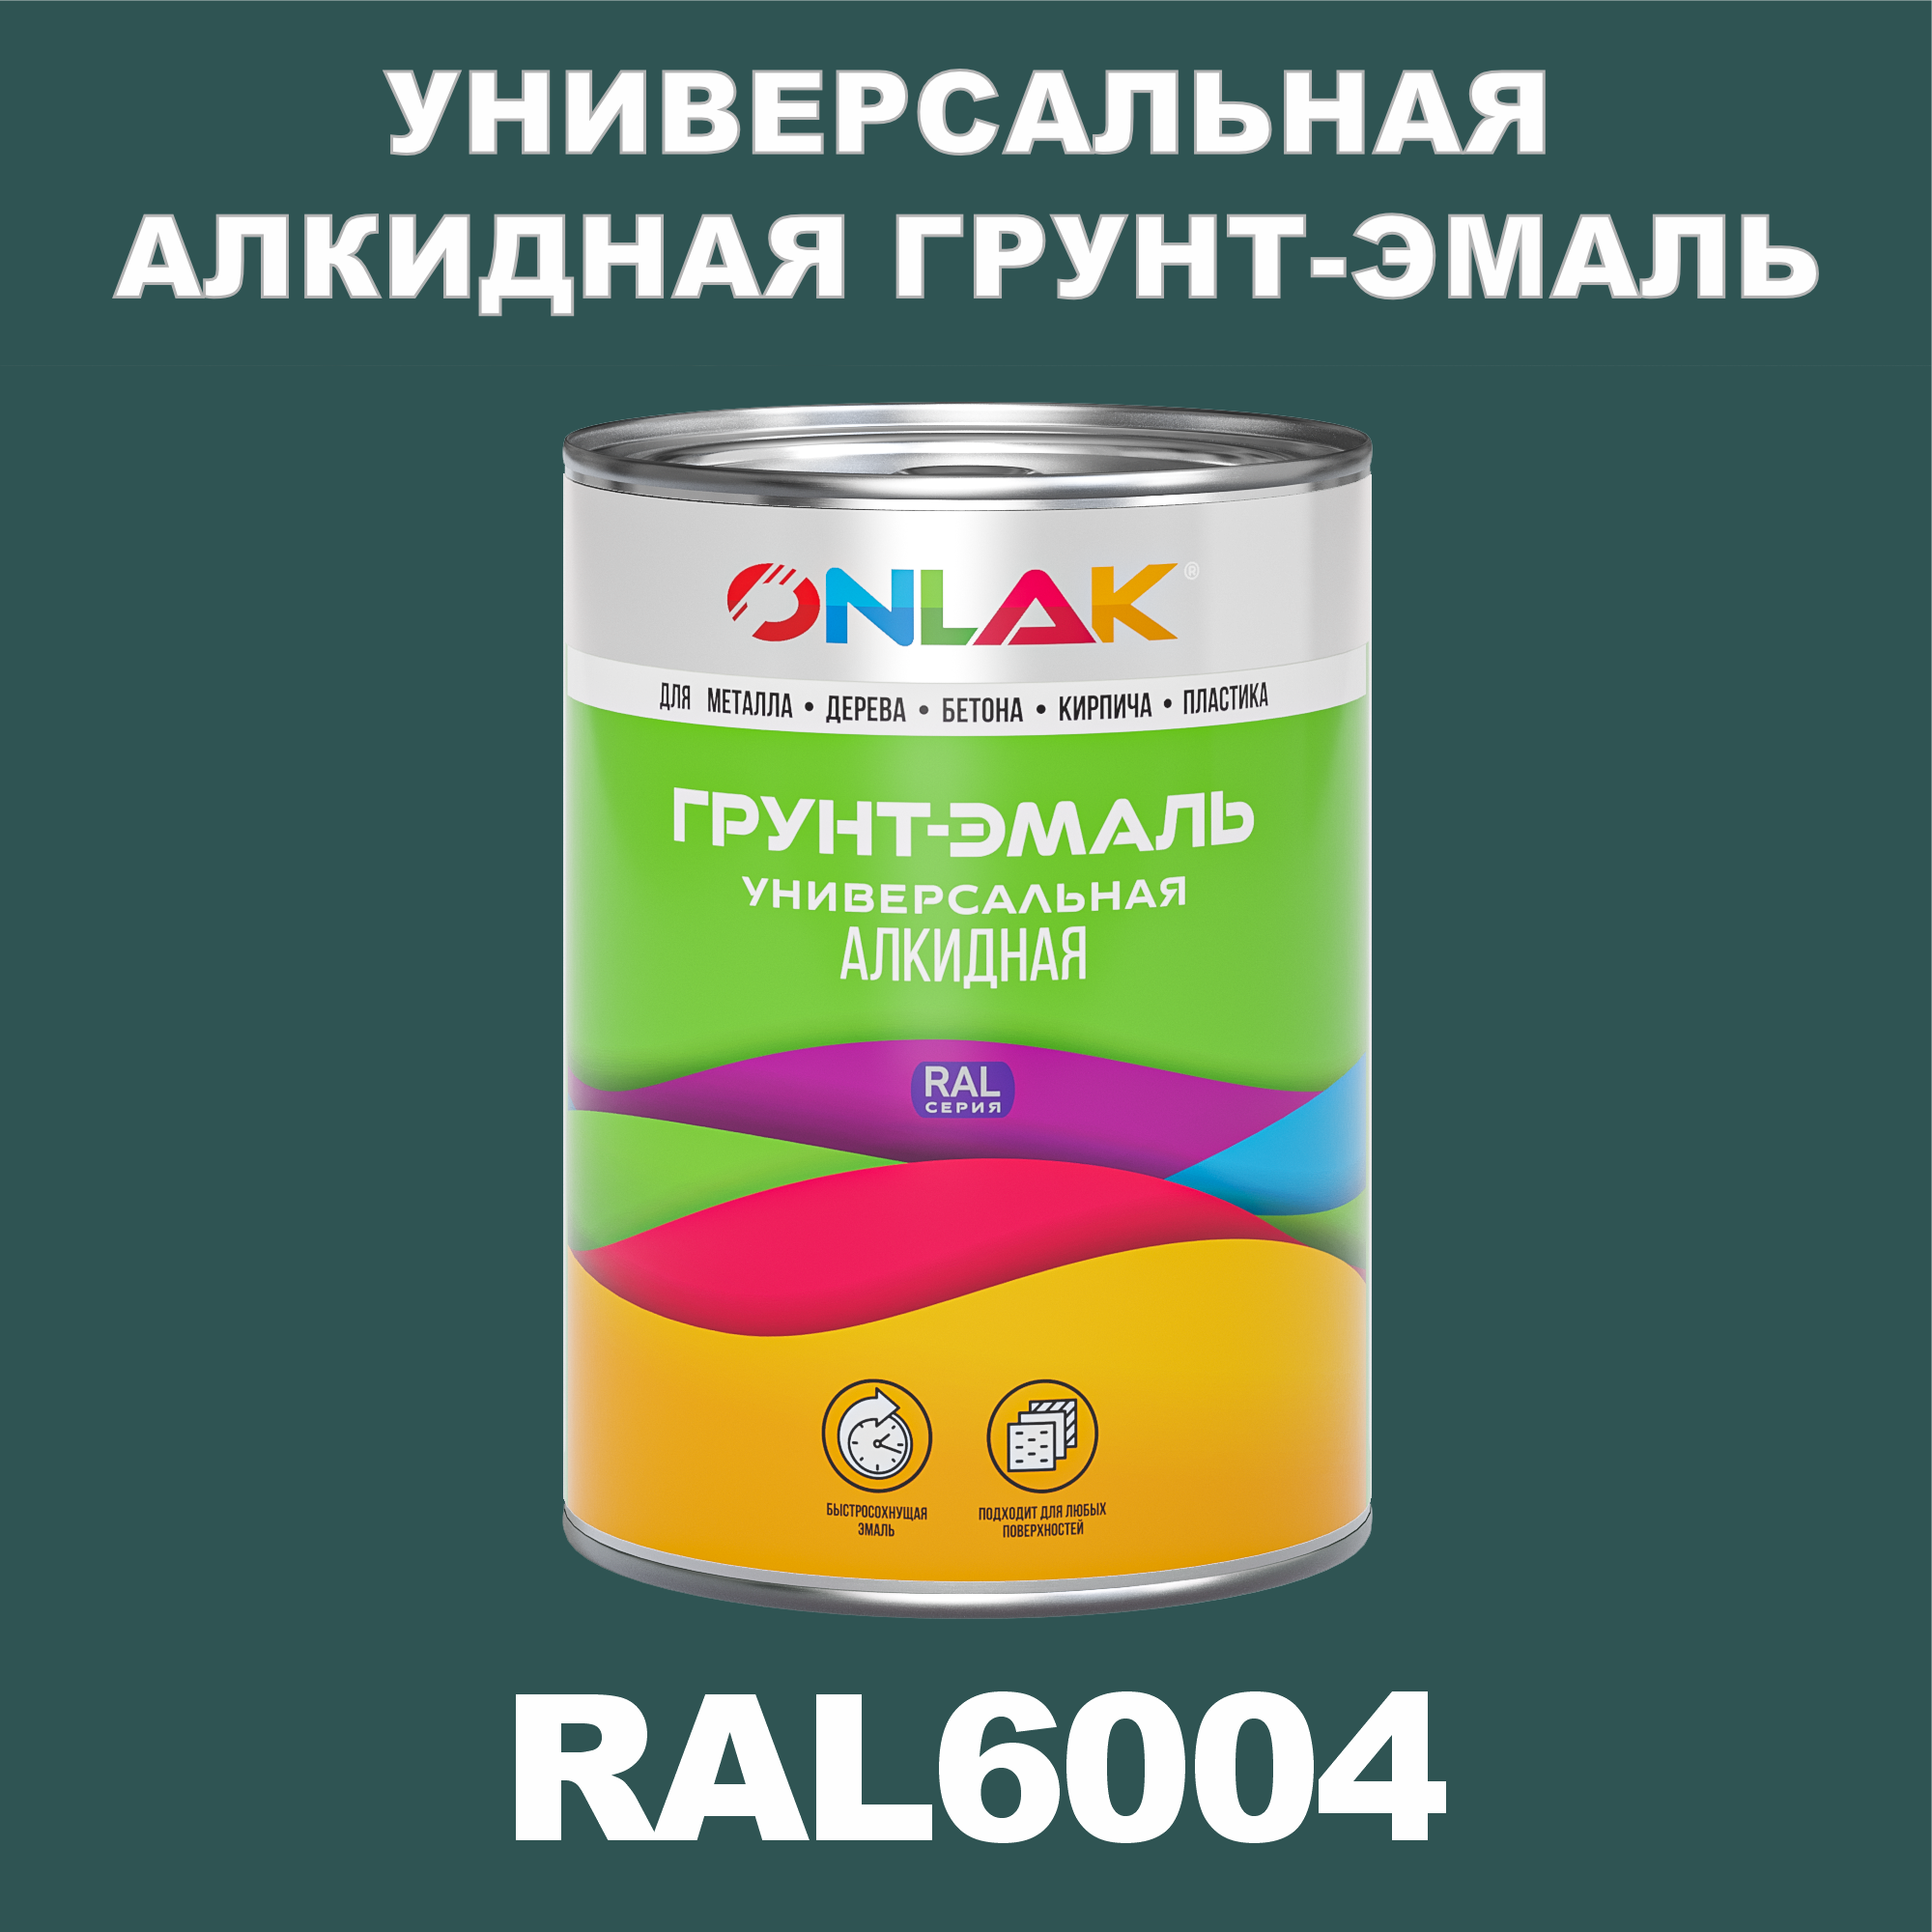 Грунт-эмаль ONLAK 1К RAL6004 антикоррозионная алкидная по металлу по ржавчине 1 кг грунт эмаль yollo по ржавчине алкидная синяя 0 9 кг